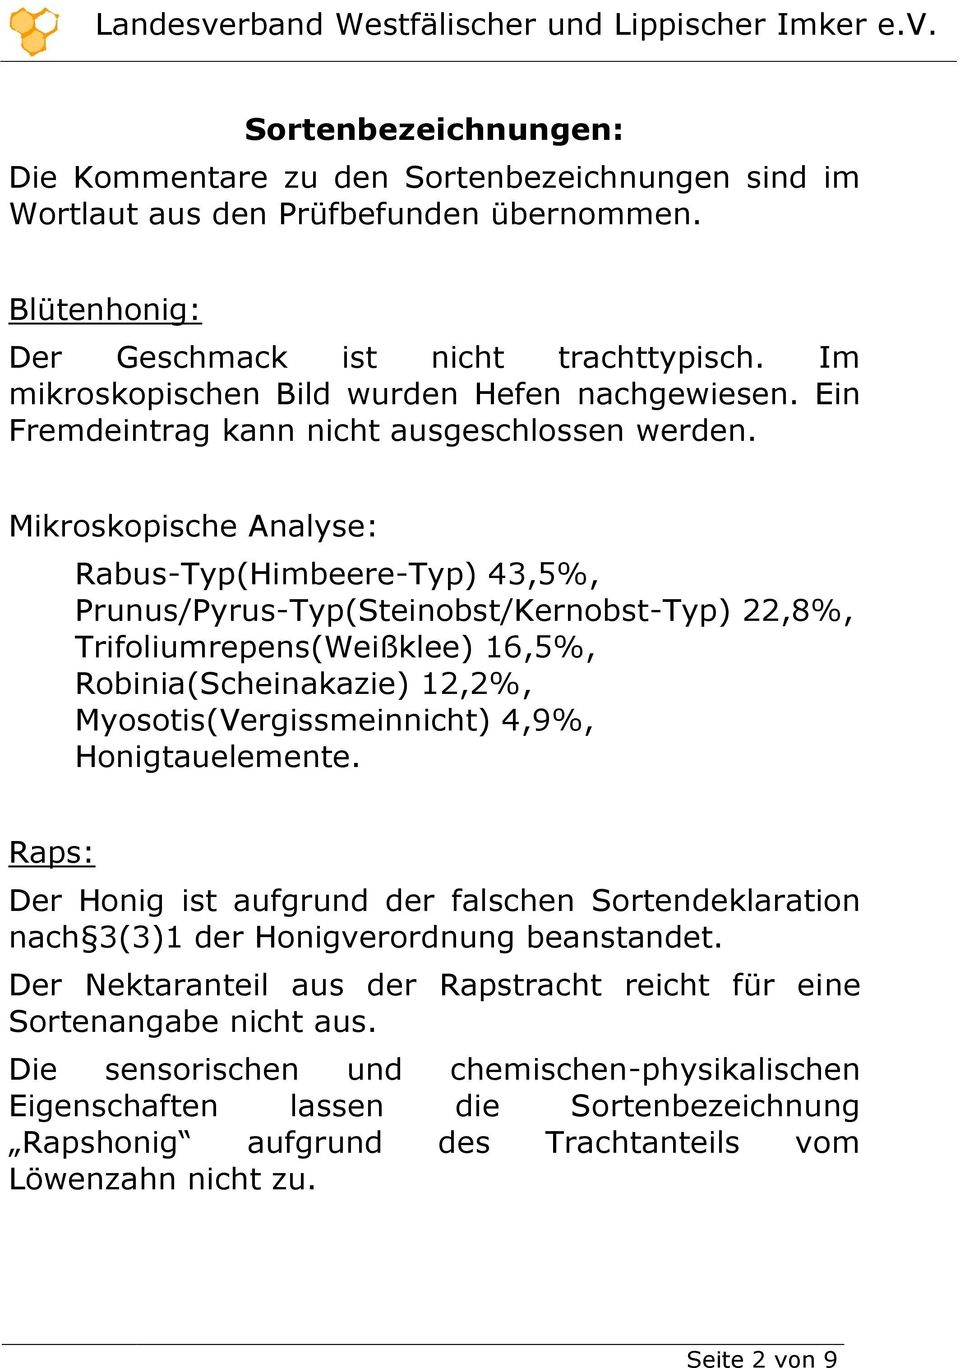 Mikroskopische Analyse: Rabus-Typ(Himbeere-Typ) 43,5%, Prunus/Pyrus-Typ(Steinobst/Kernobst-Typ) 22,8%, Trifoliumrepens(Weißklee) 16,5%, Robinia(Scheinakazie) 12,2%, Myosotis(Vergissmeinnicht) 4,9%,